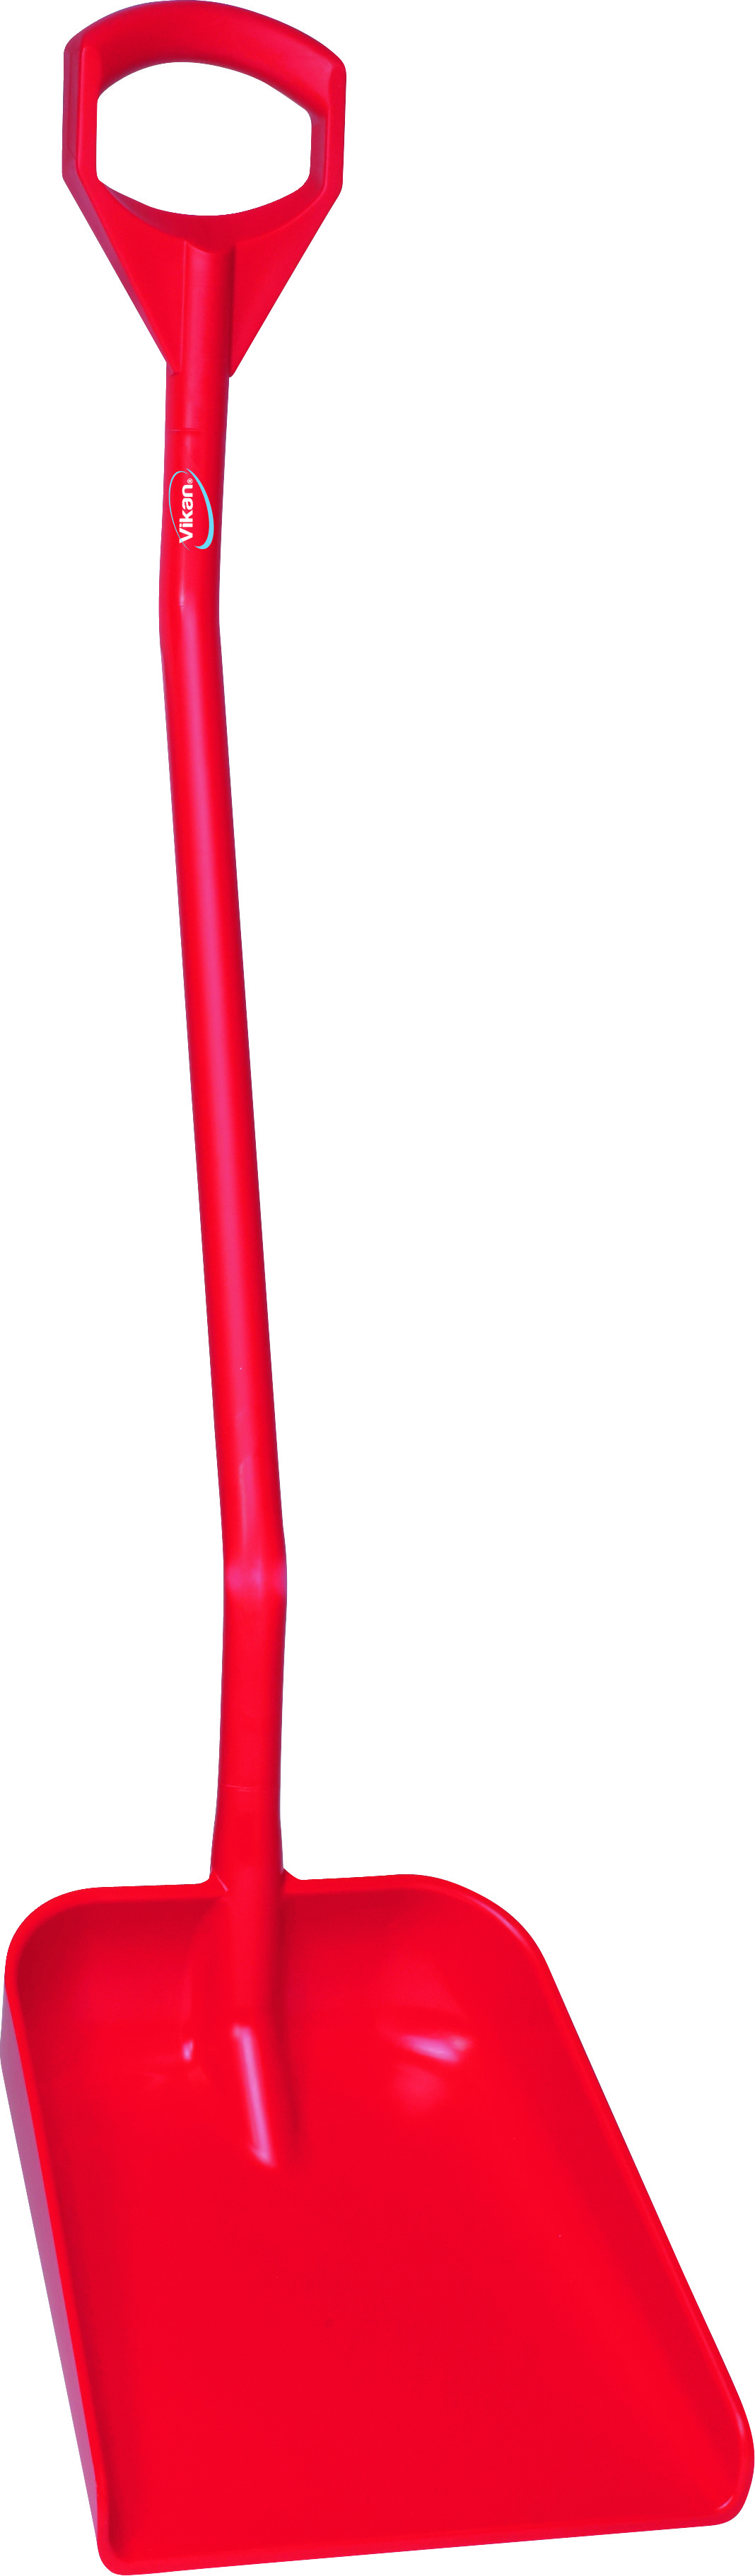 Лопата Vikan эргономичная с длинной рукояткой большая, 1310 мм, красная